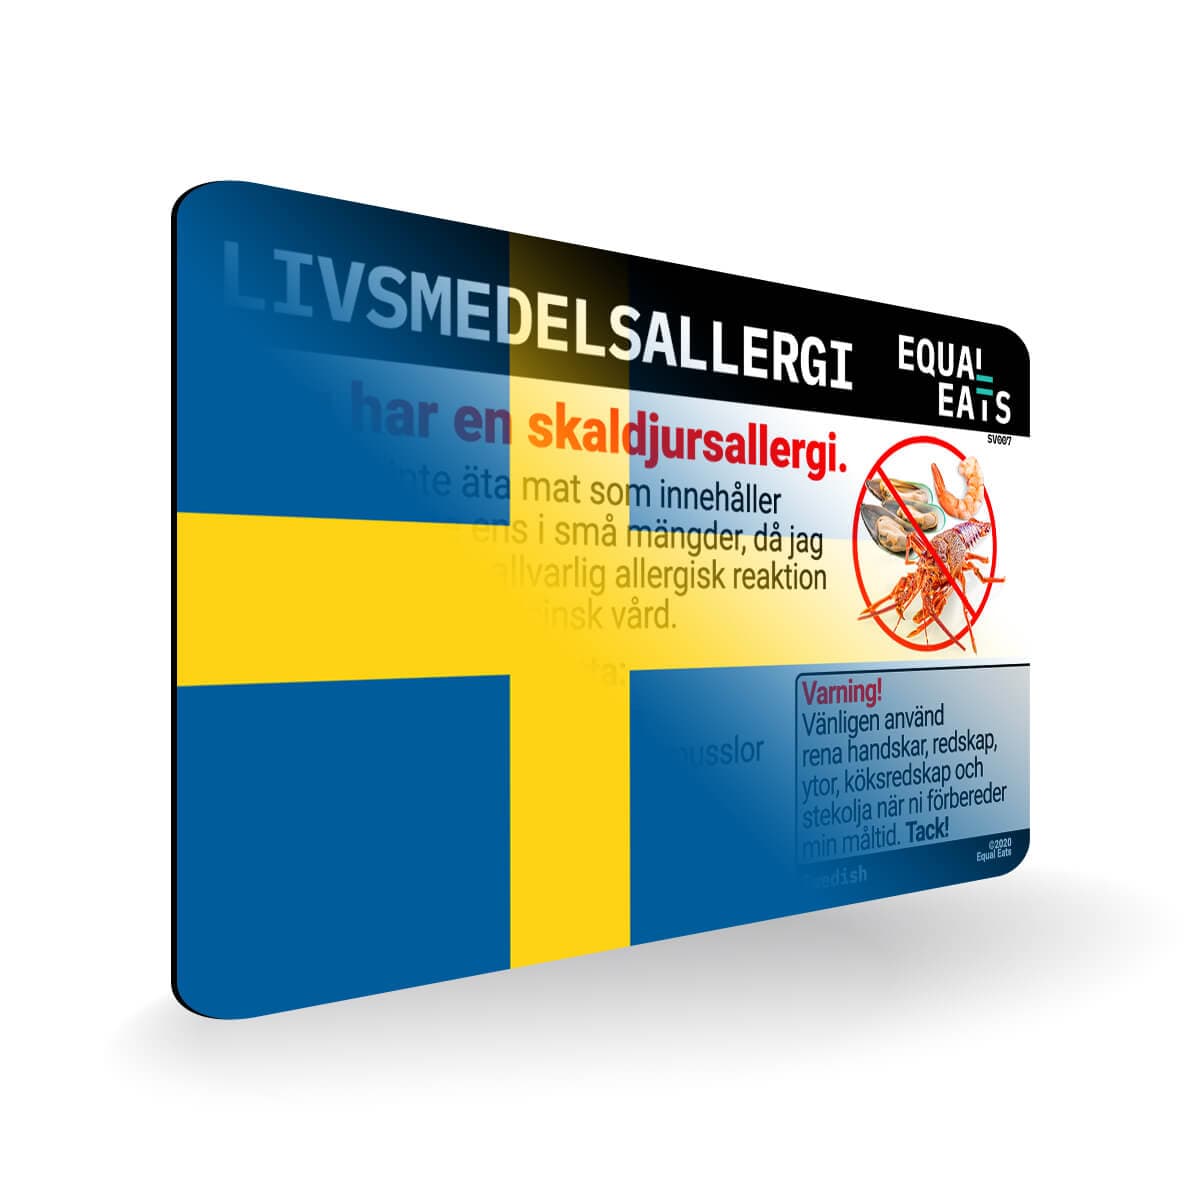 Shellfish Allergy in Swedish. Shellfish Allergy Card for Sweden